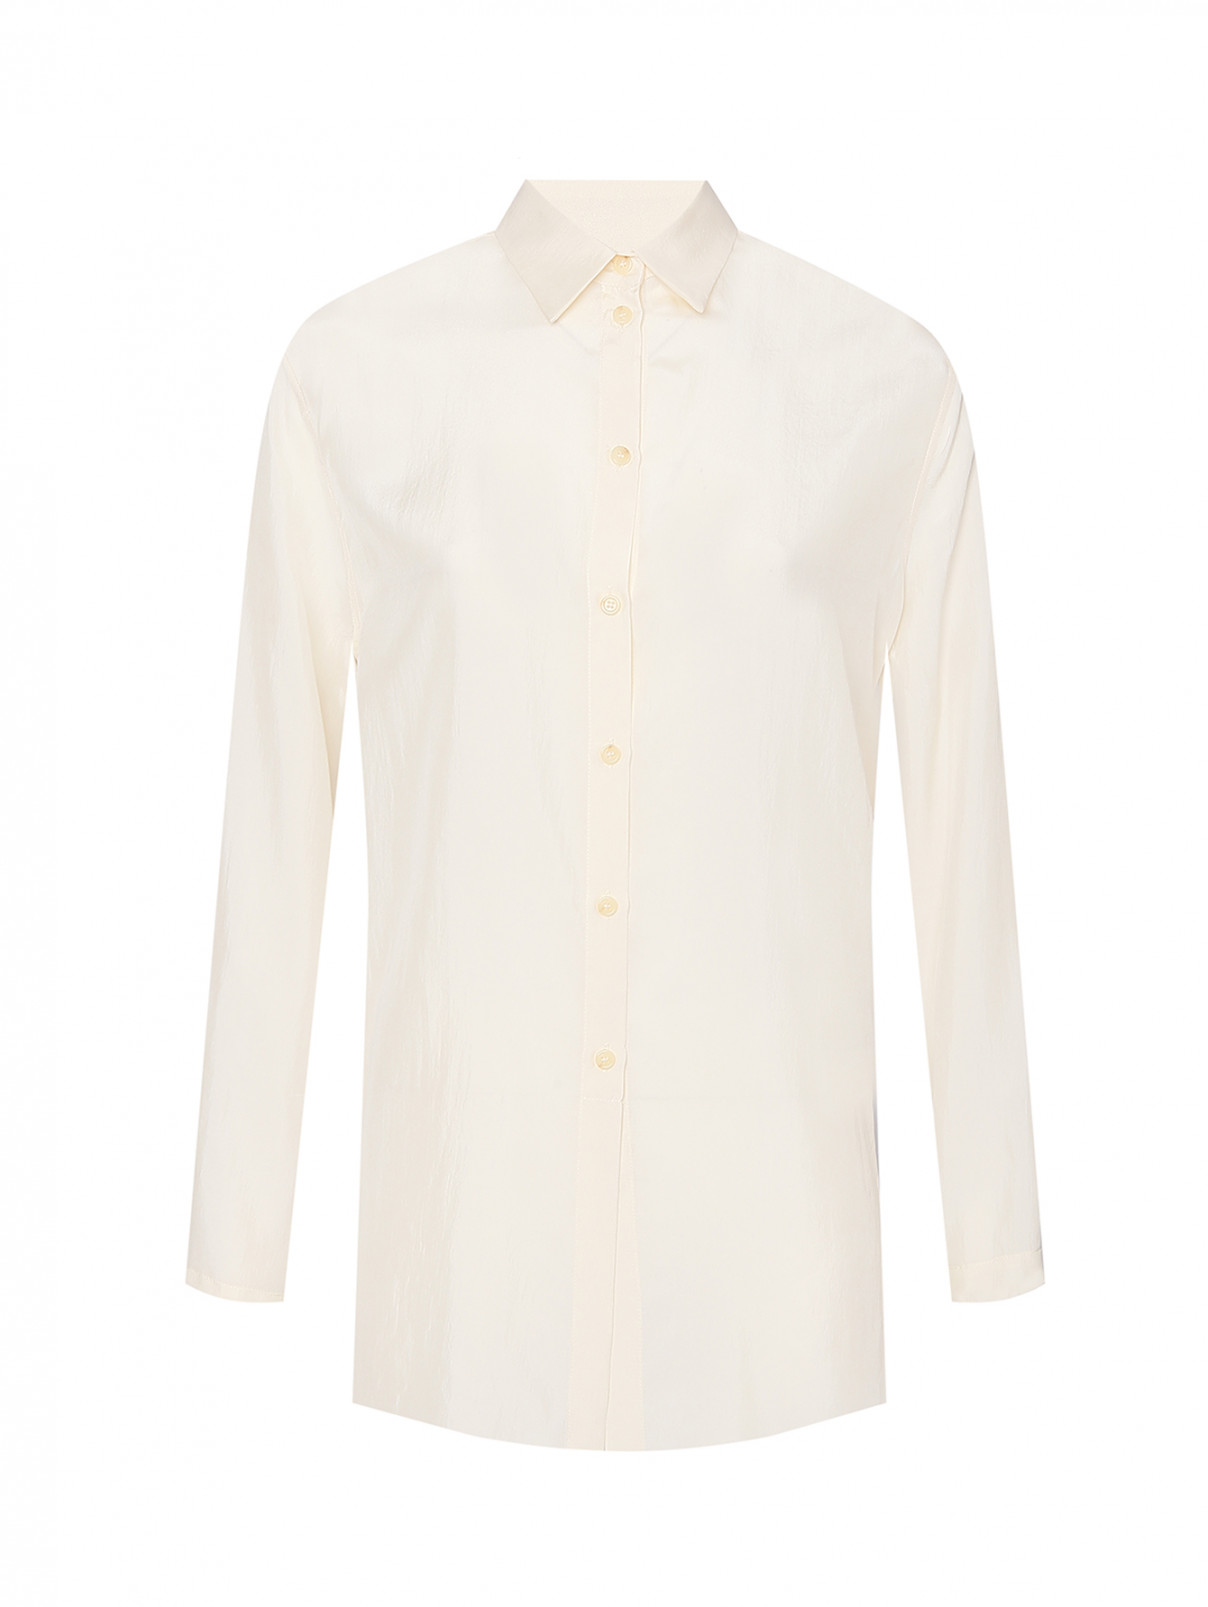 Рубашка из шелка на пуговицах Alysi  –  Общий вид  – Цвет:  Белый